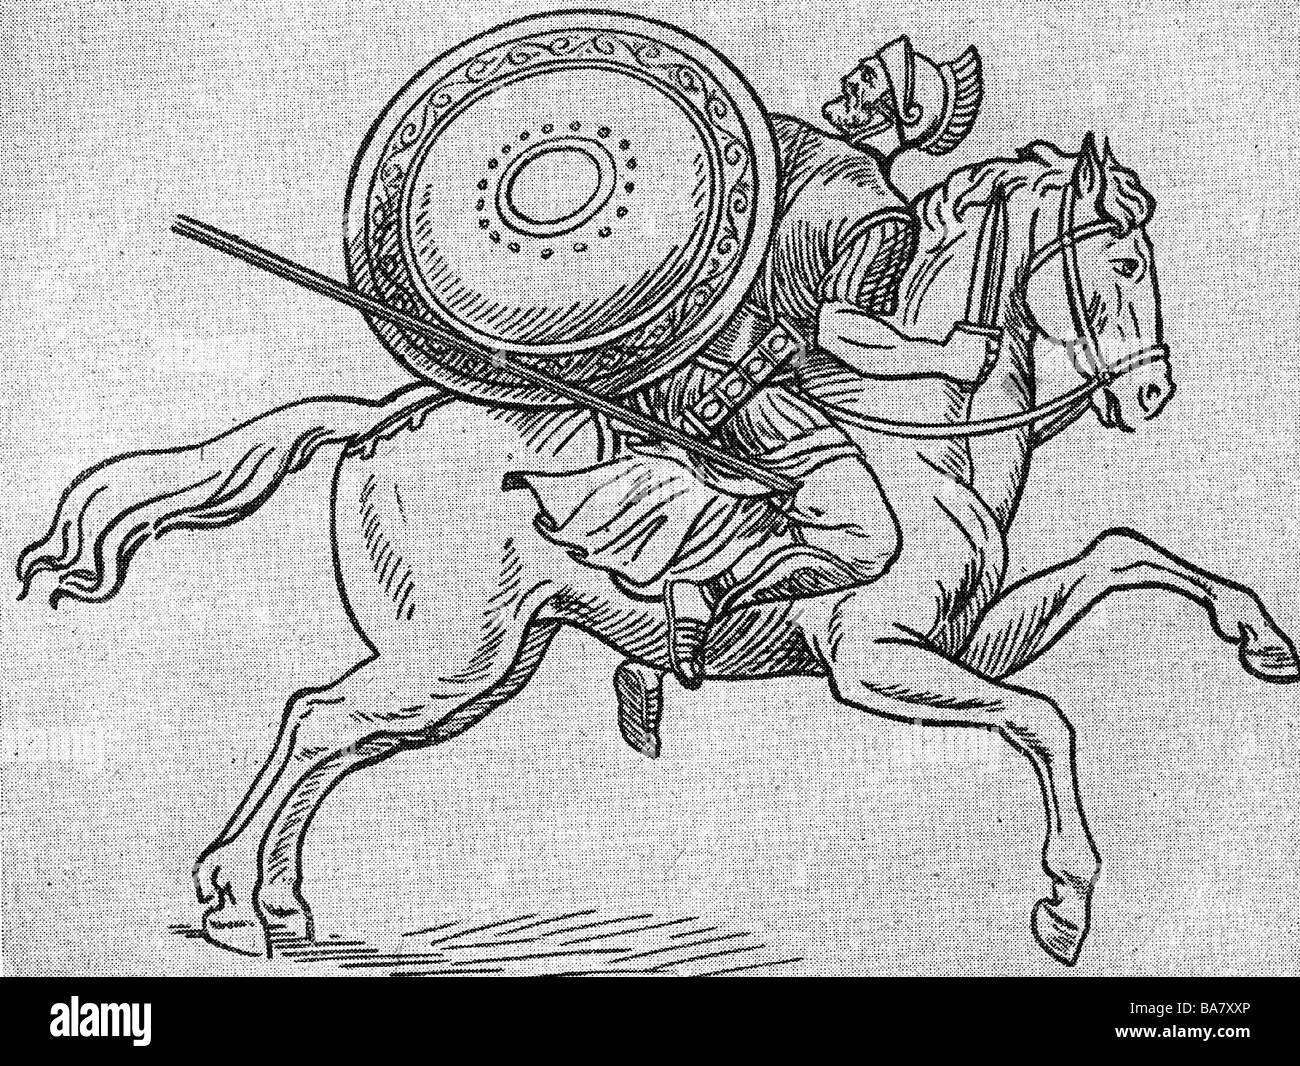 Spartacus, vers 109 - 71 av. J.-C., gladiateur thrace, dirigeant la révolte esclave contre Rome 73 - 71 av. J.-C., est blessé sur la jambe, gravure en bois après Fresco, XIXe siècle, , Banque D'Images